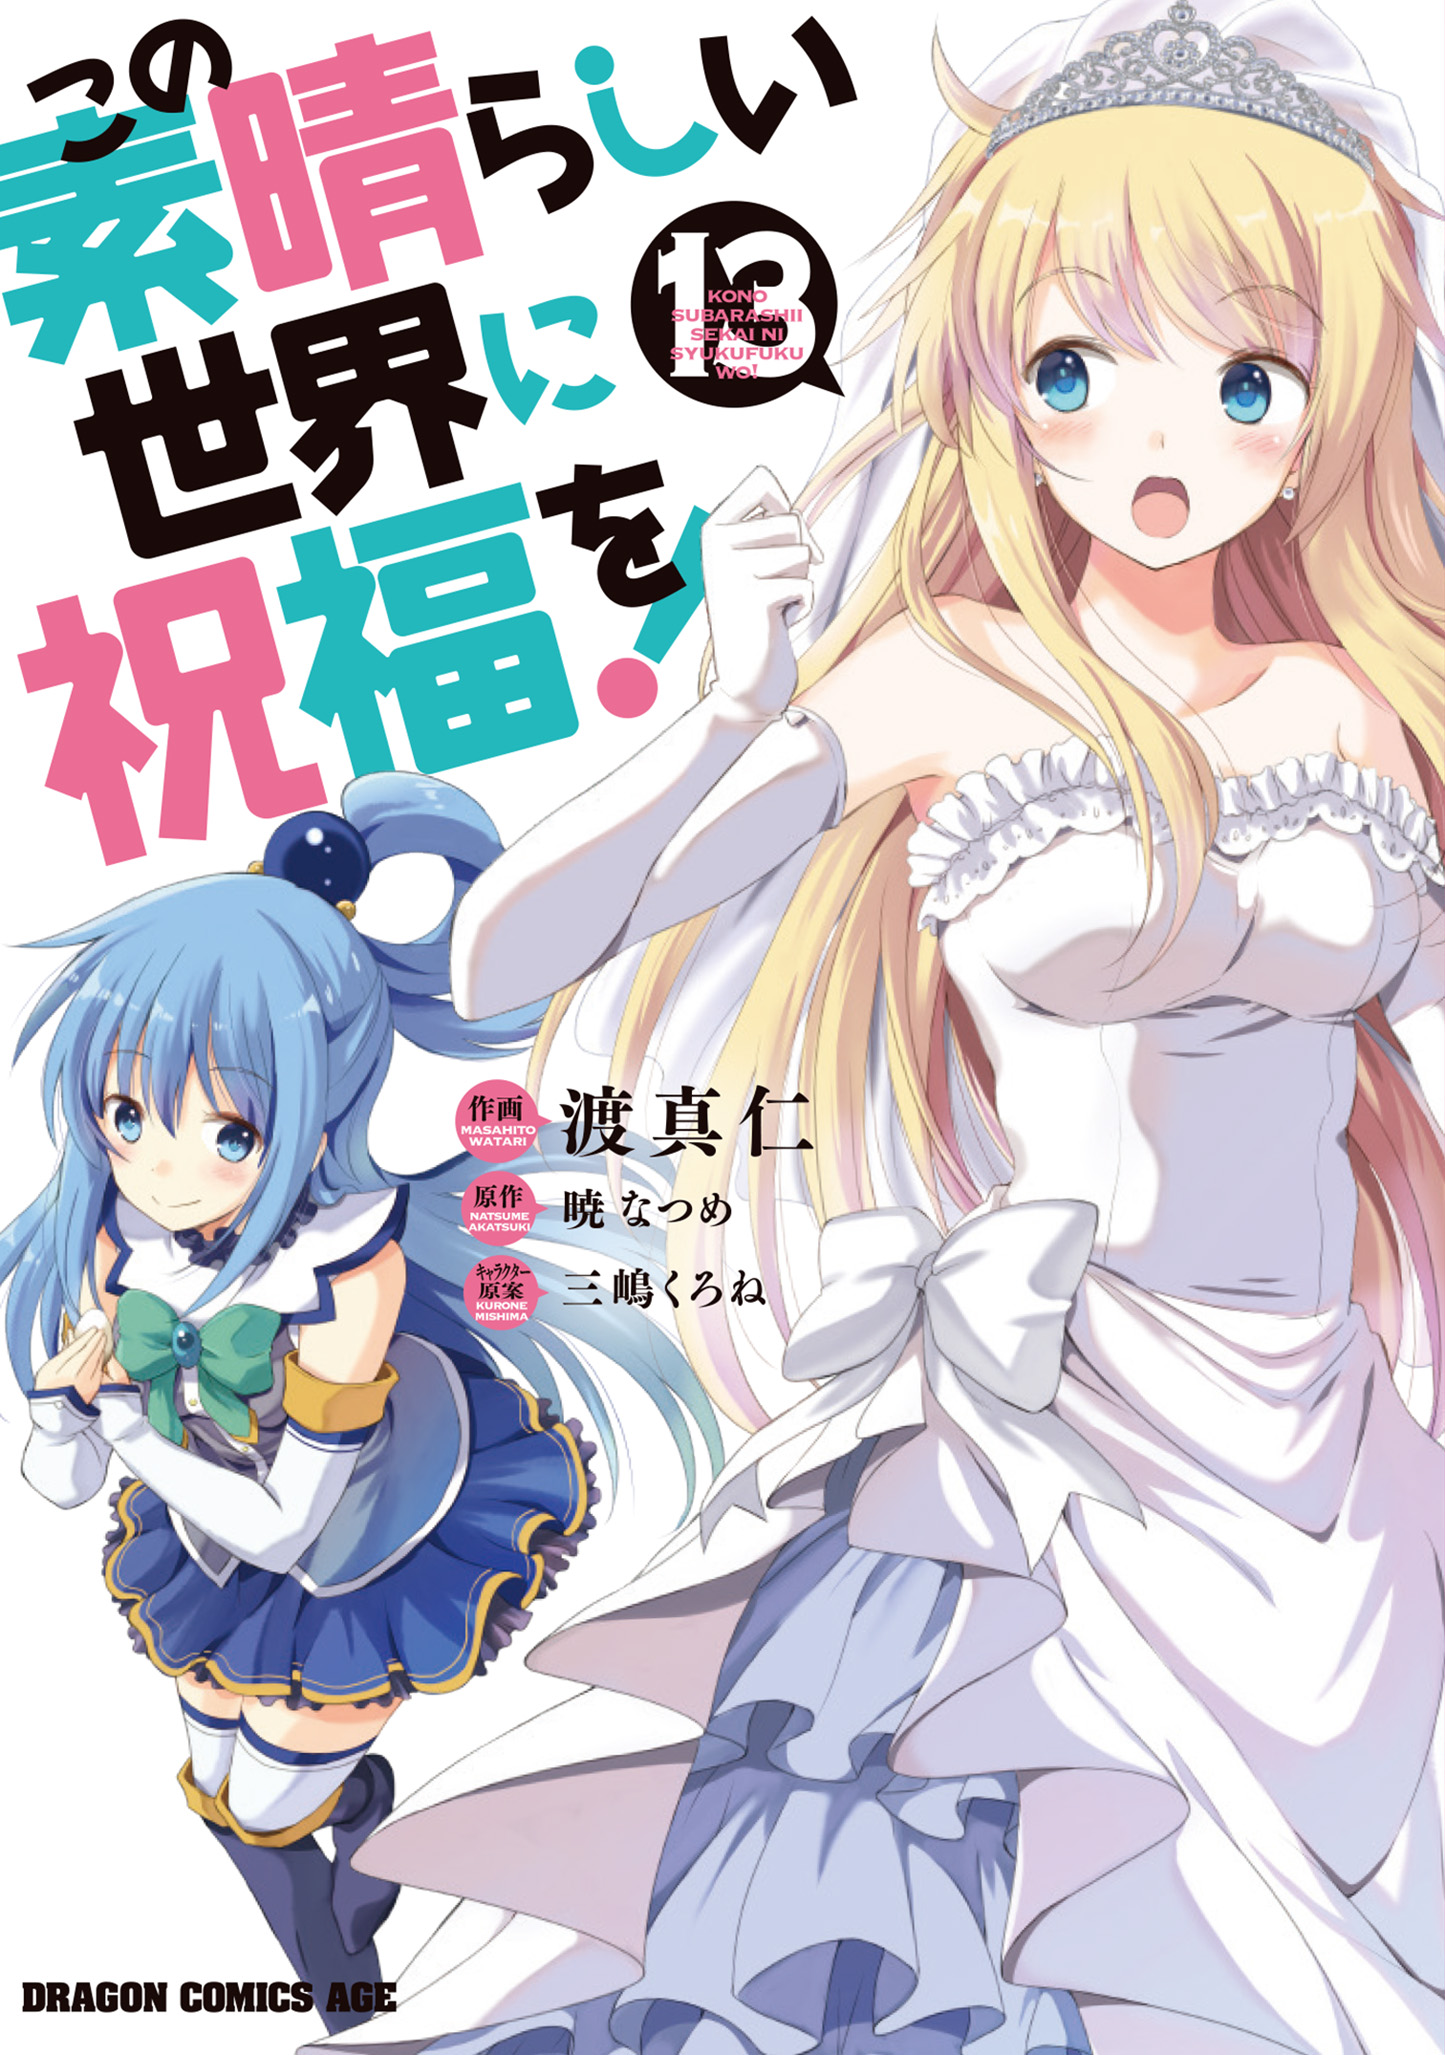 Konosuba Manga Volume 3, Kono Subarashii Sekai ni Shukufuku wo! Wiki